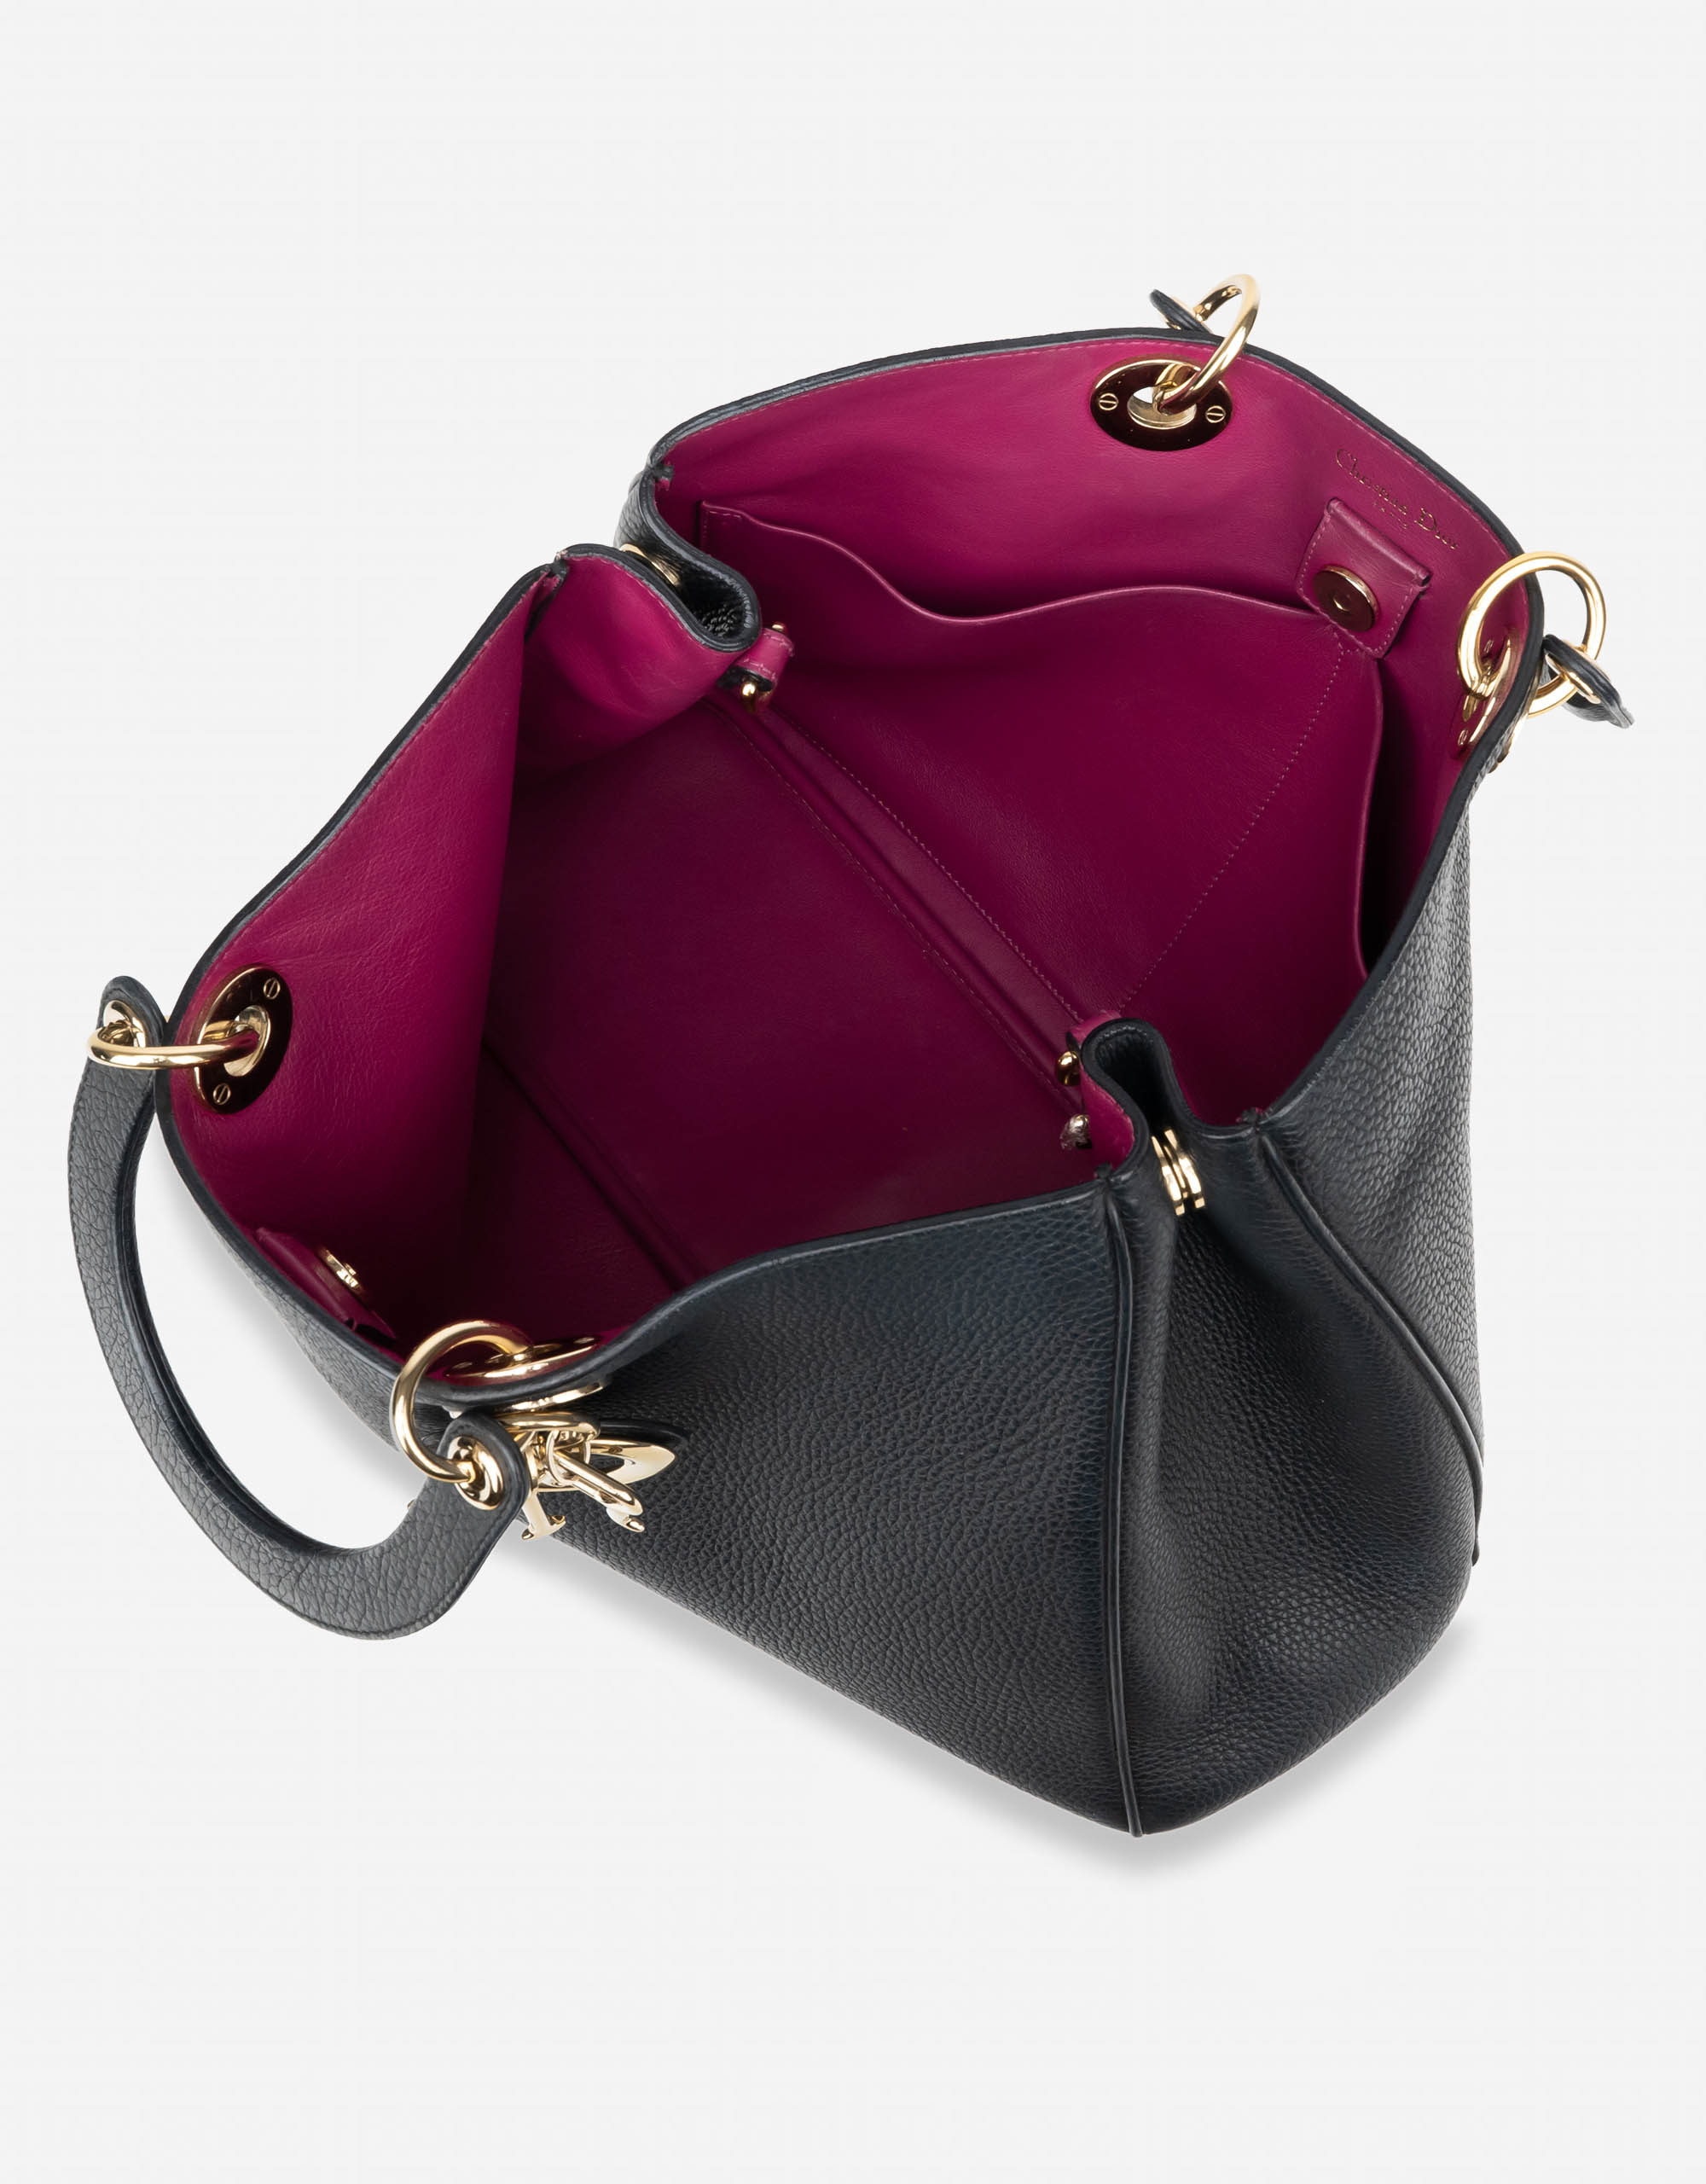 Sac Dior d'occasion Diorissimo Grand Veau Noir Noir | Vendez votre sac de créateur sur Saclab.com